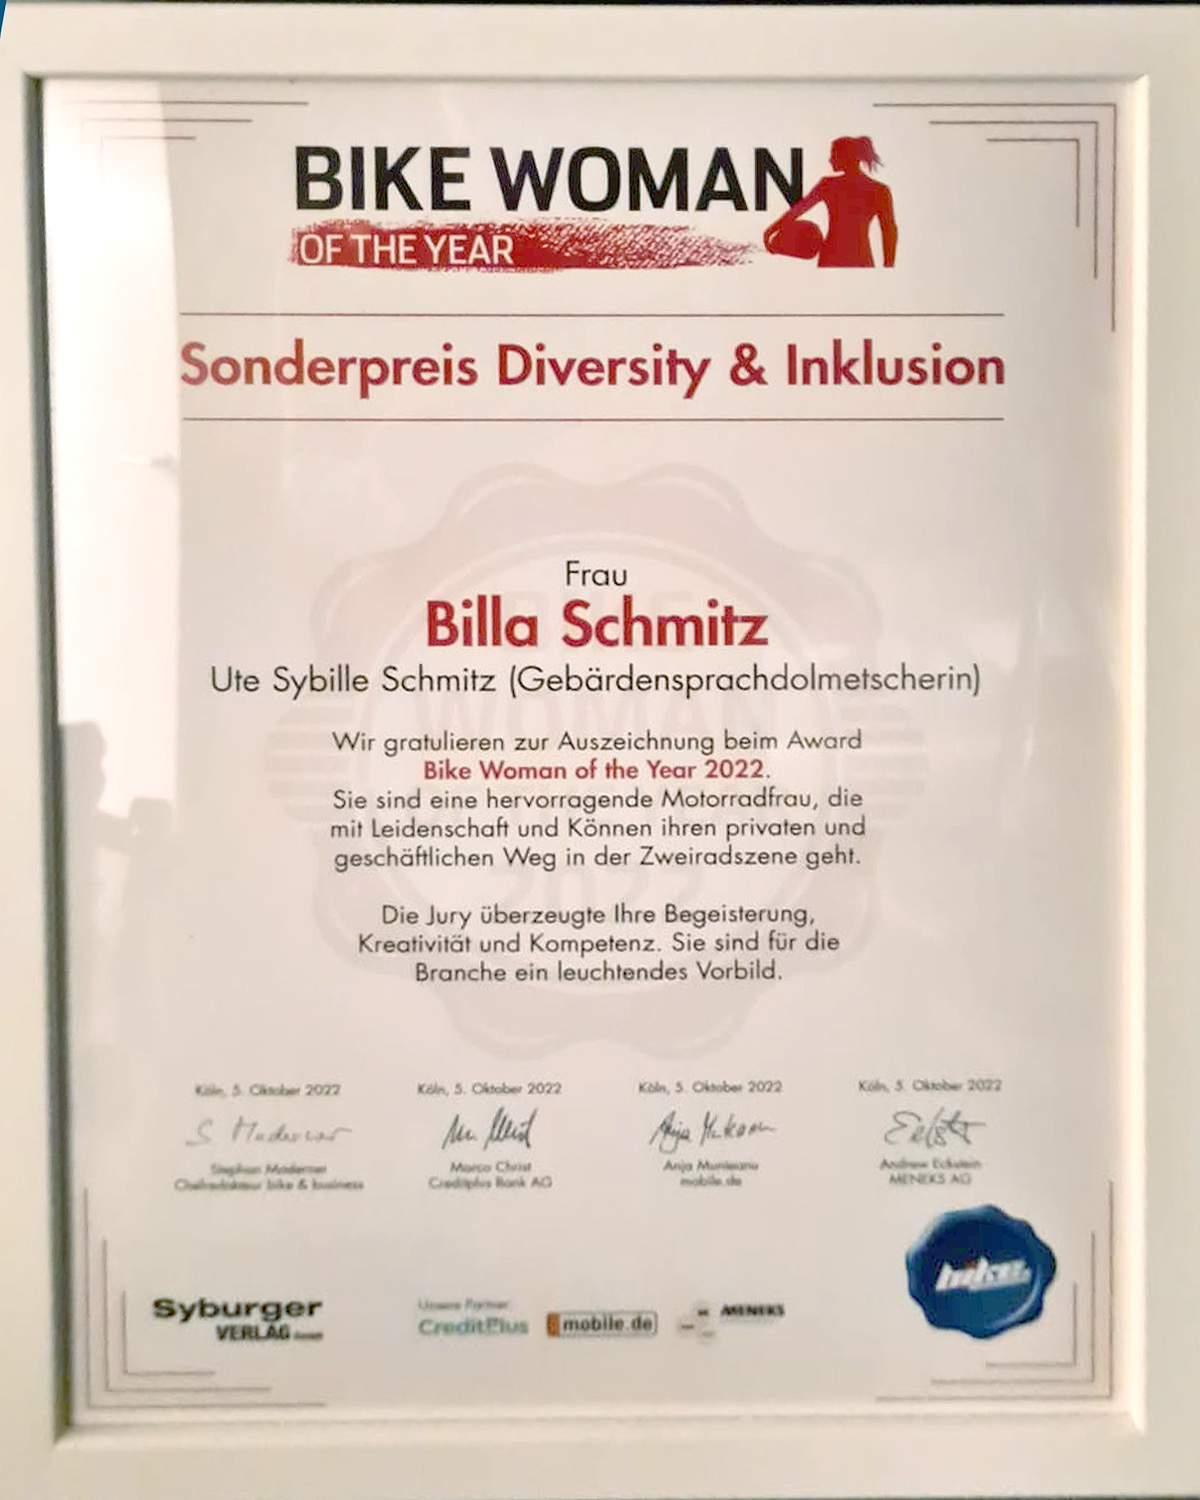 Bikewoman of the Year 2022 Sonderpreis Inklusion